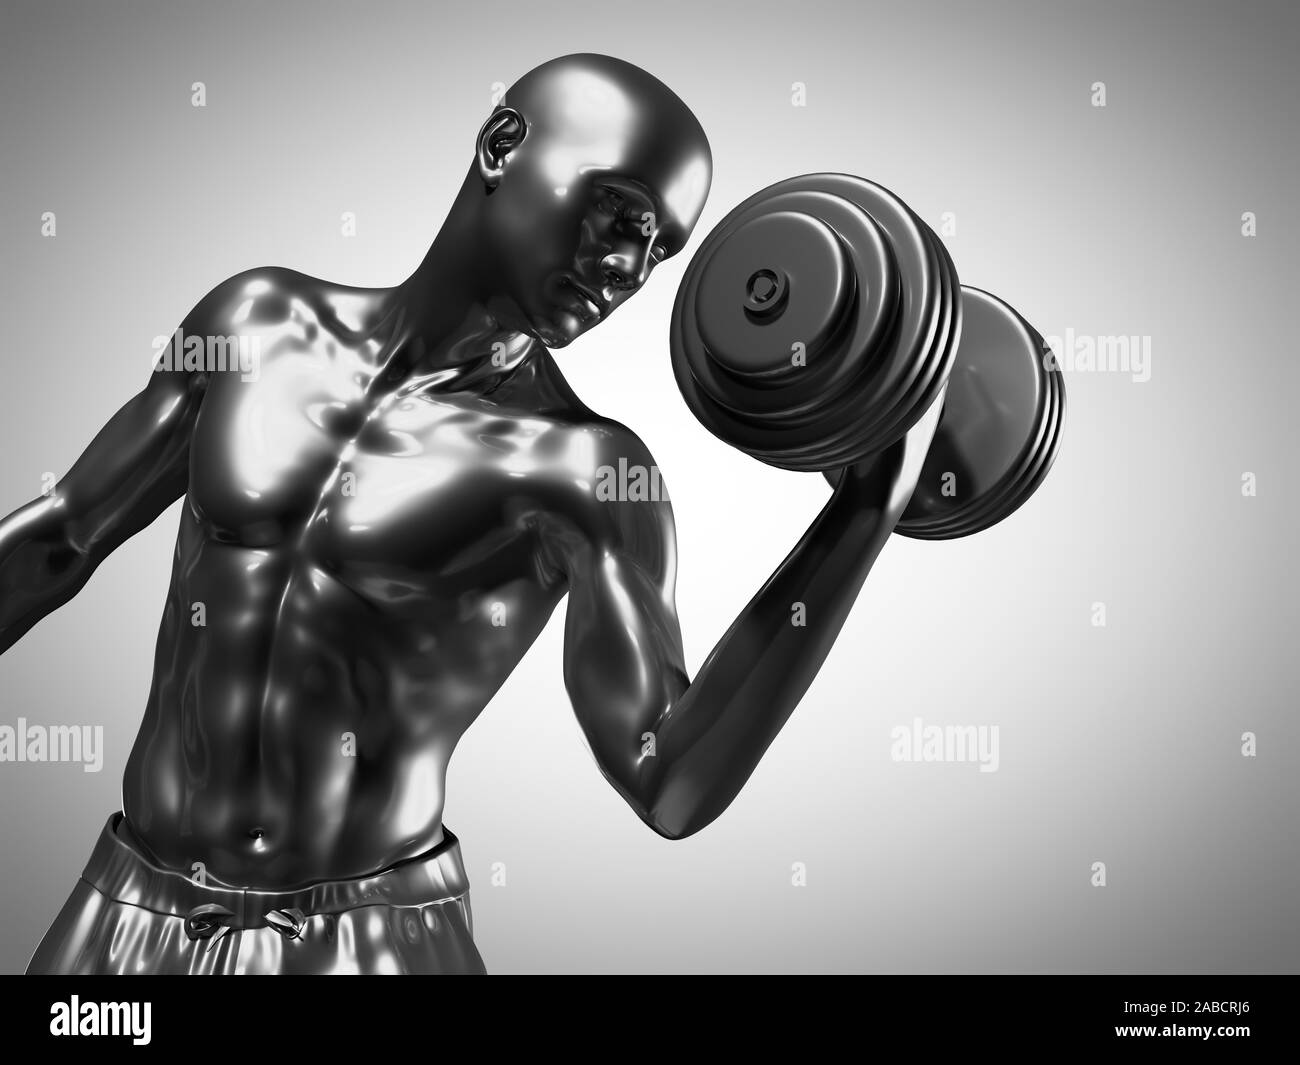 3D Rendering accurato dal punto di vista medico illustrazione di un uomo metallico il sollevamento pesi Foto Stock